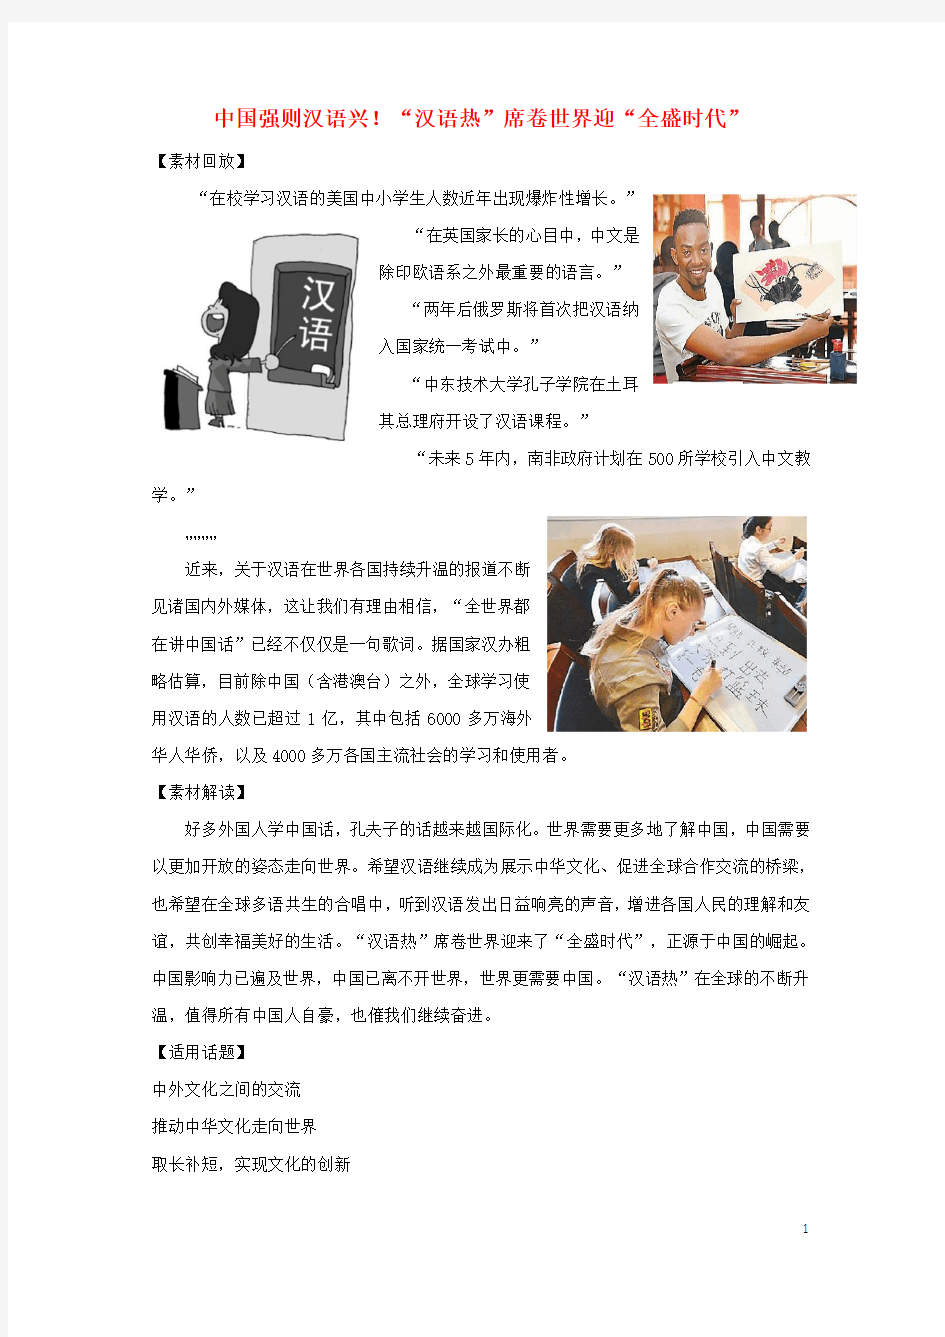 2018高考语文作文备考热点素材中国强则汉语兴!“汉语热”席卷世界迎“全盛时代”